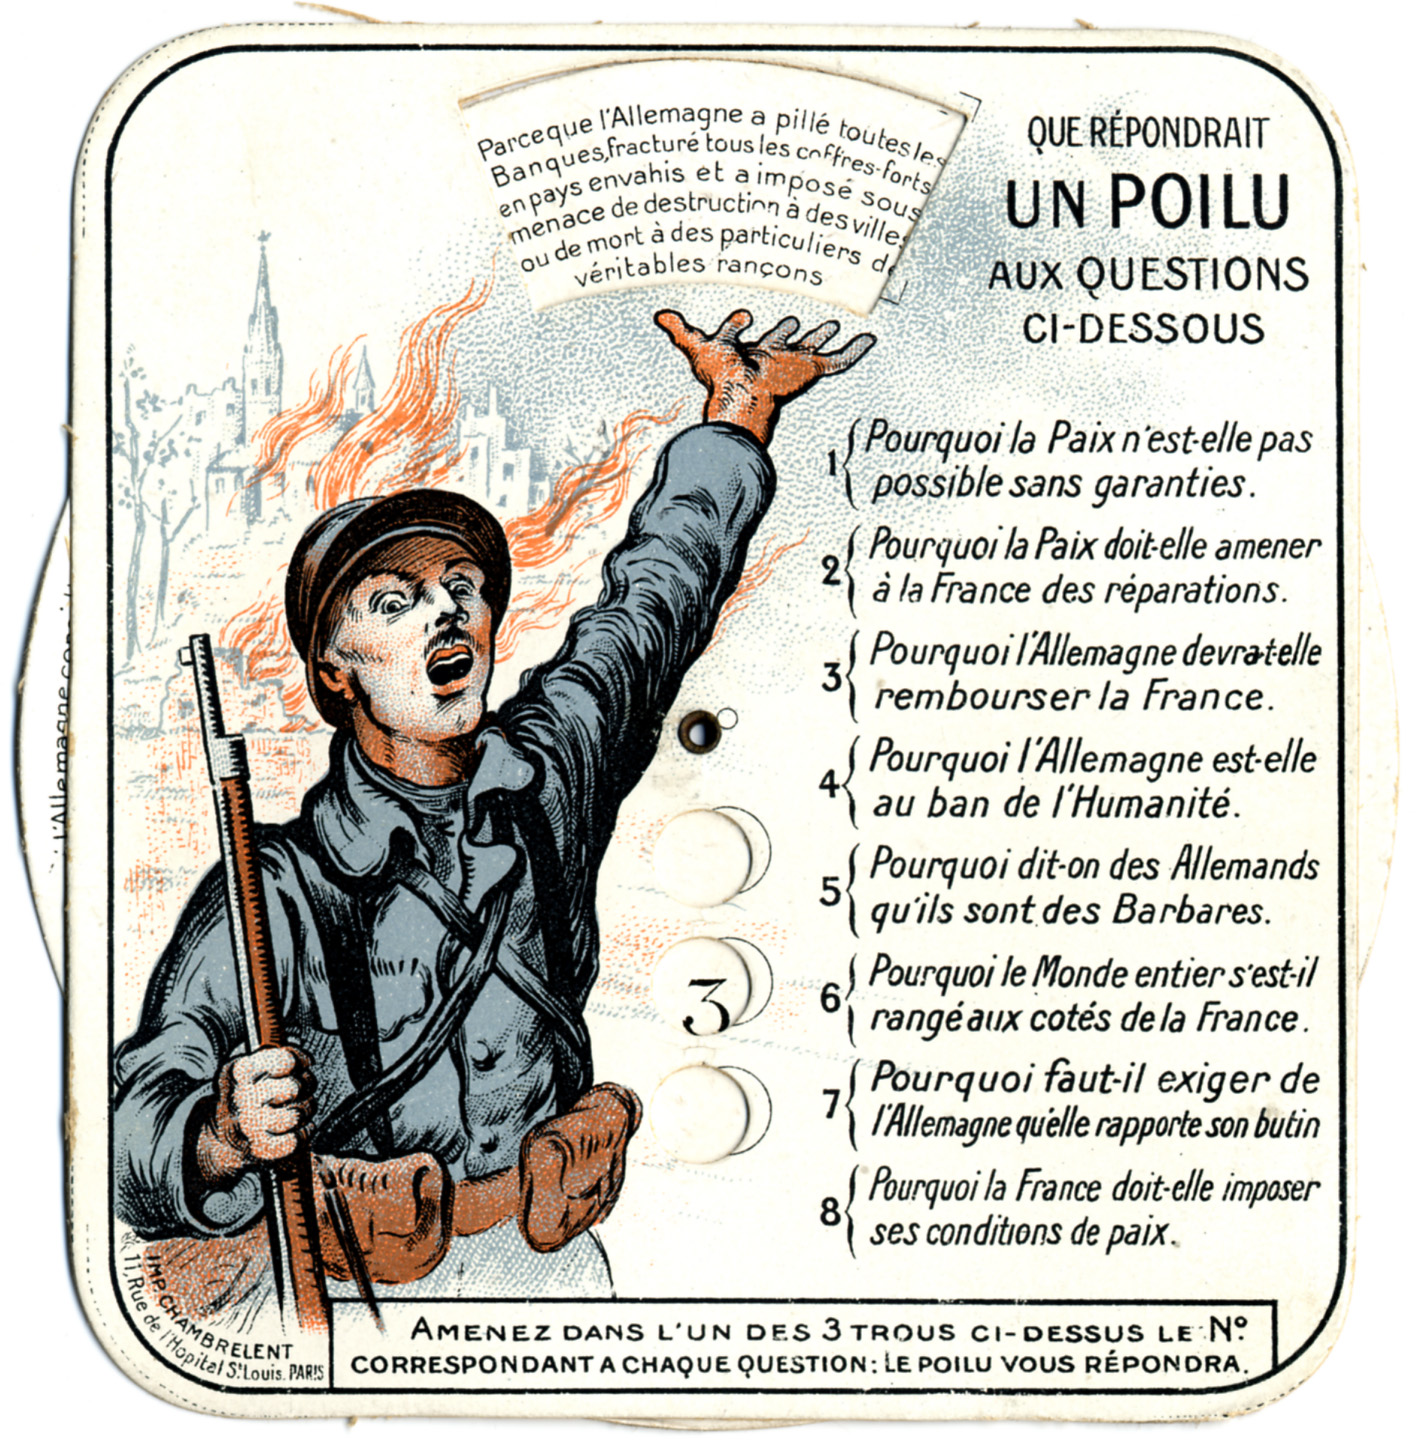 1919 propagande francaise boucher 25 63 29